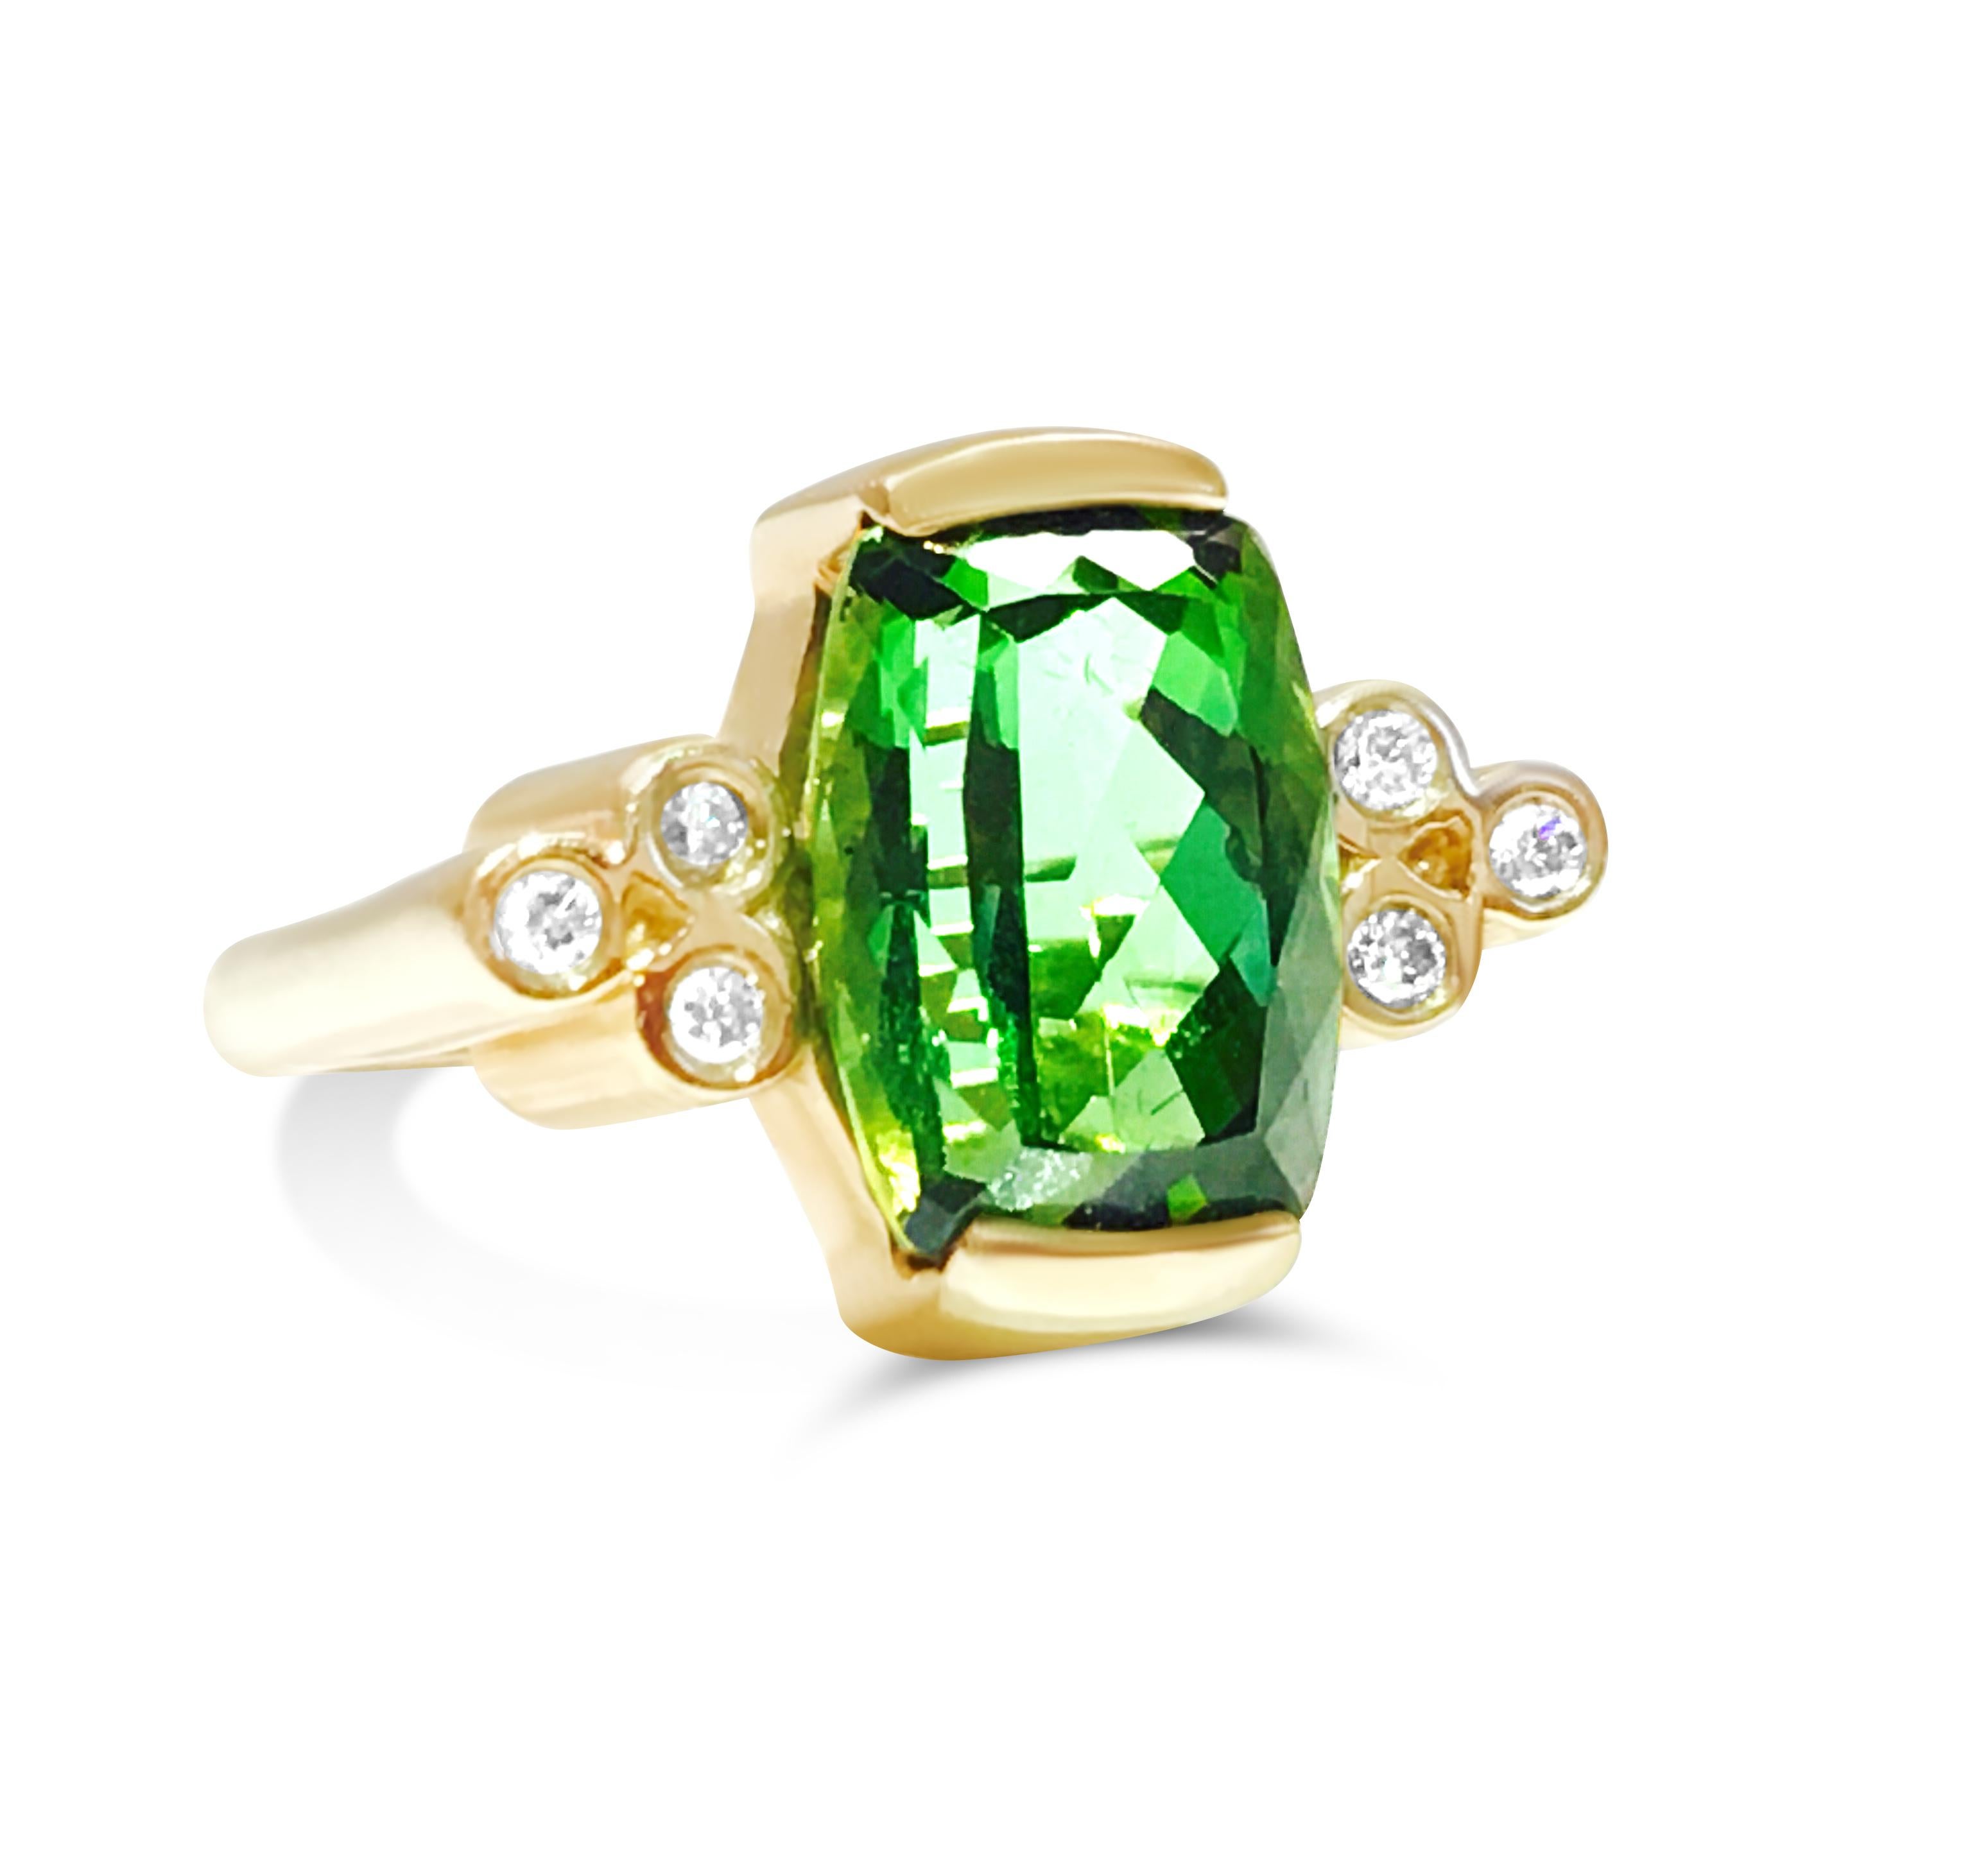 Dieser Ring aus grünem Turmalin im Vintage-Stil verleiht Ihrem Finger zeitlosen Charme und ist eine bezaubernde Hommage an Eleganz und Anmut. Der sattgrüne Farbton des Turmalin-Edelsteins strahlt eine bezaubernde Ausstrahlung aus und erinnert mit